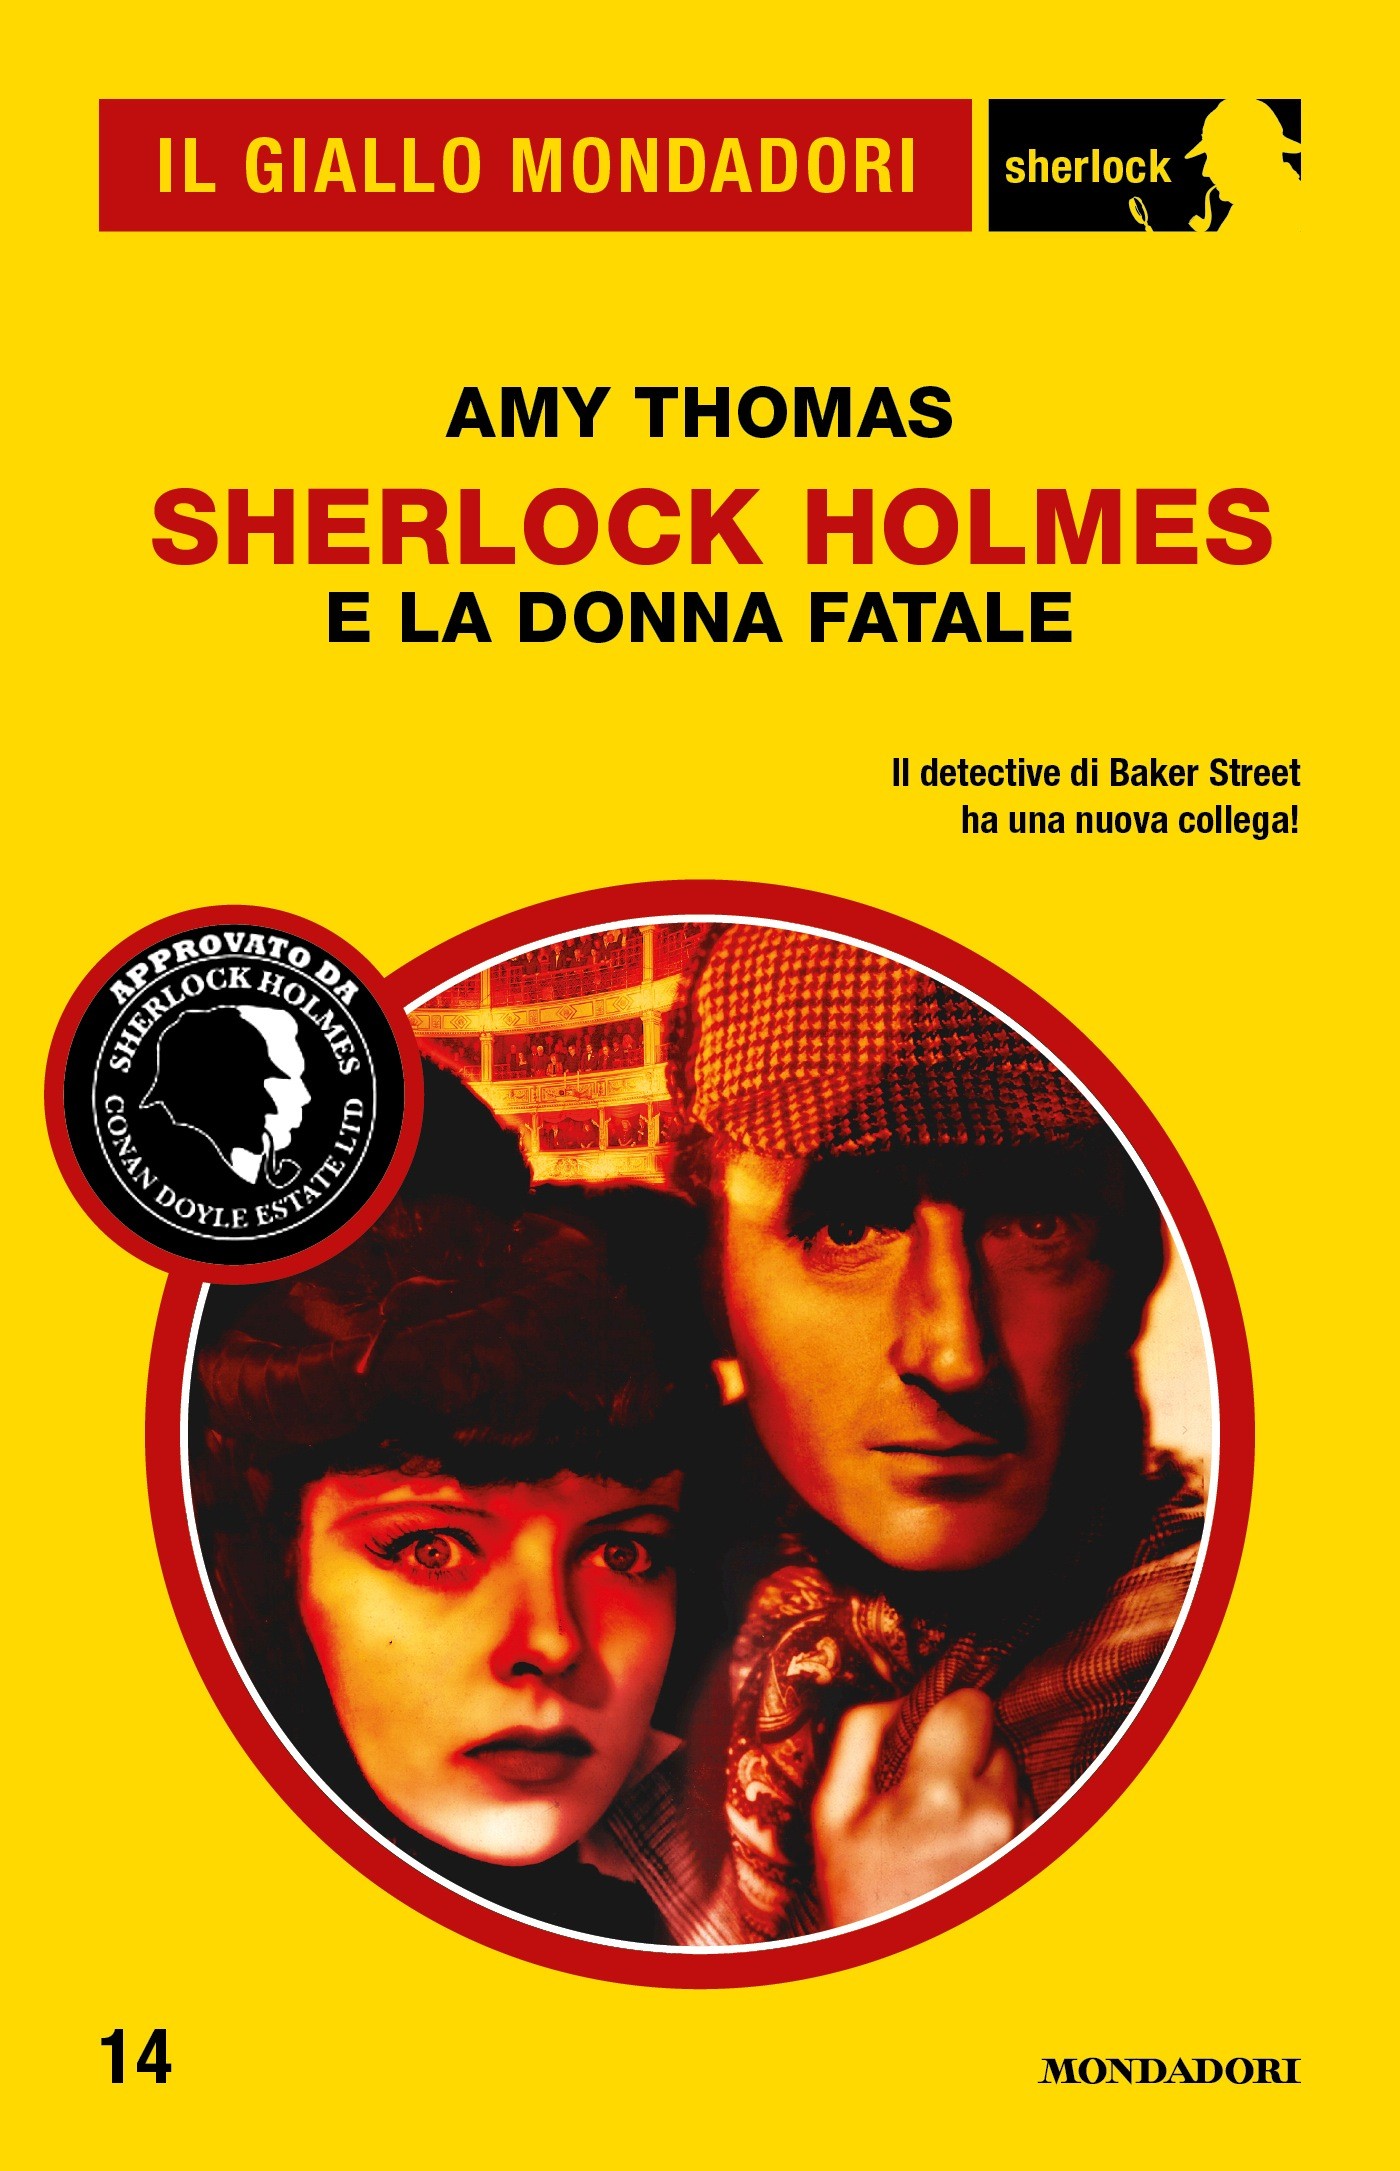 Sherlock Holmes e la donna fatale (Il Giallo Mondadori Sherlock) - Librerie.coop